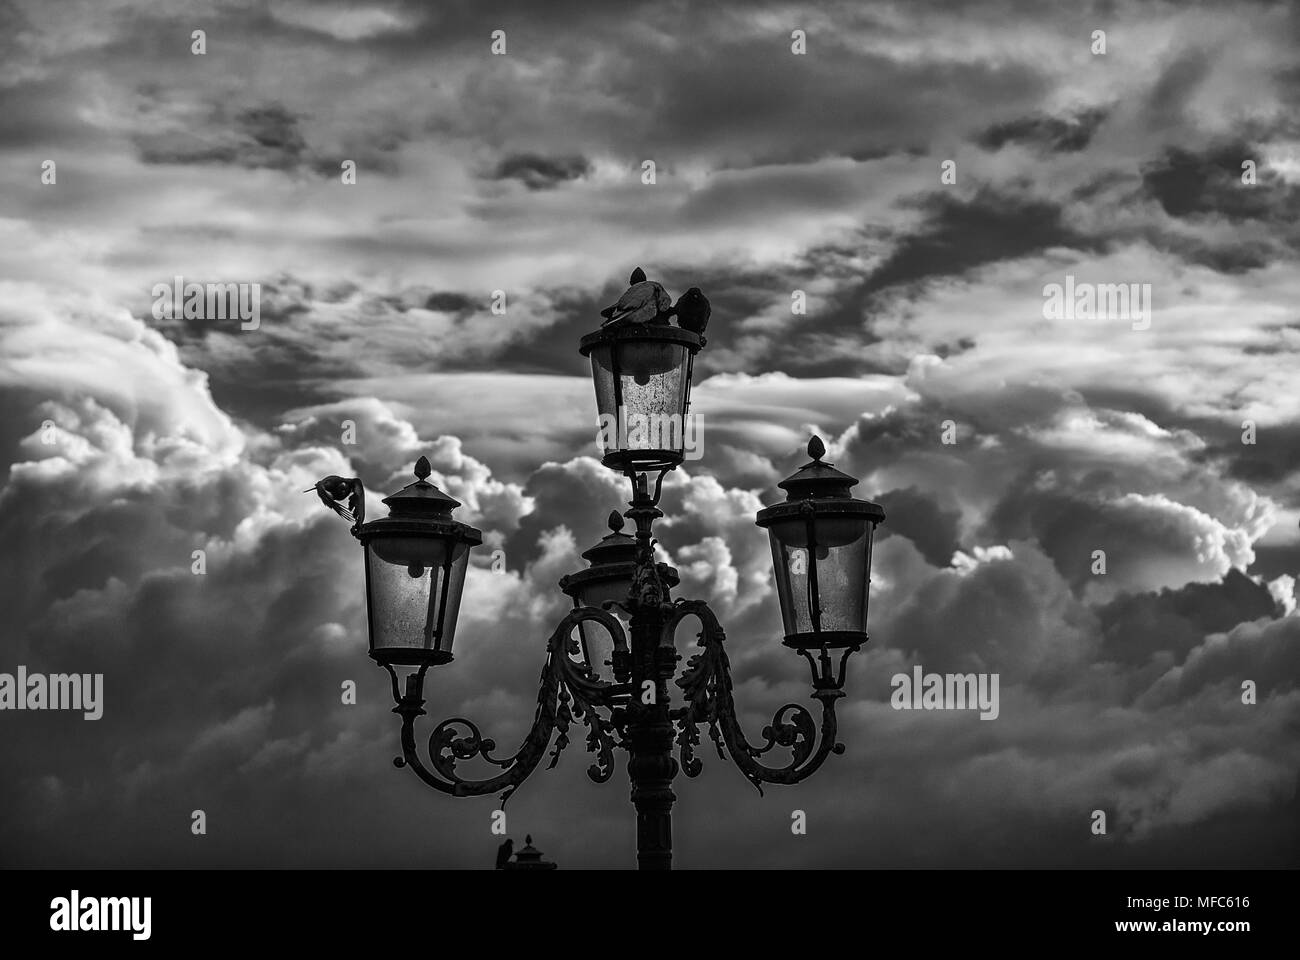 Vieille lampe de rue à Venise avec les pigeons contre un ciel nuageux (noir et blanc) Banque D'Images